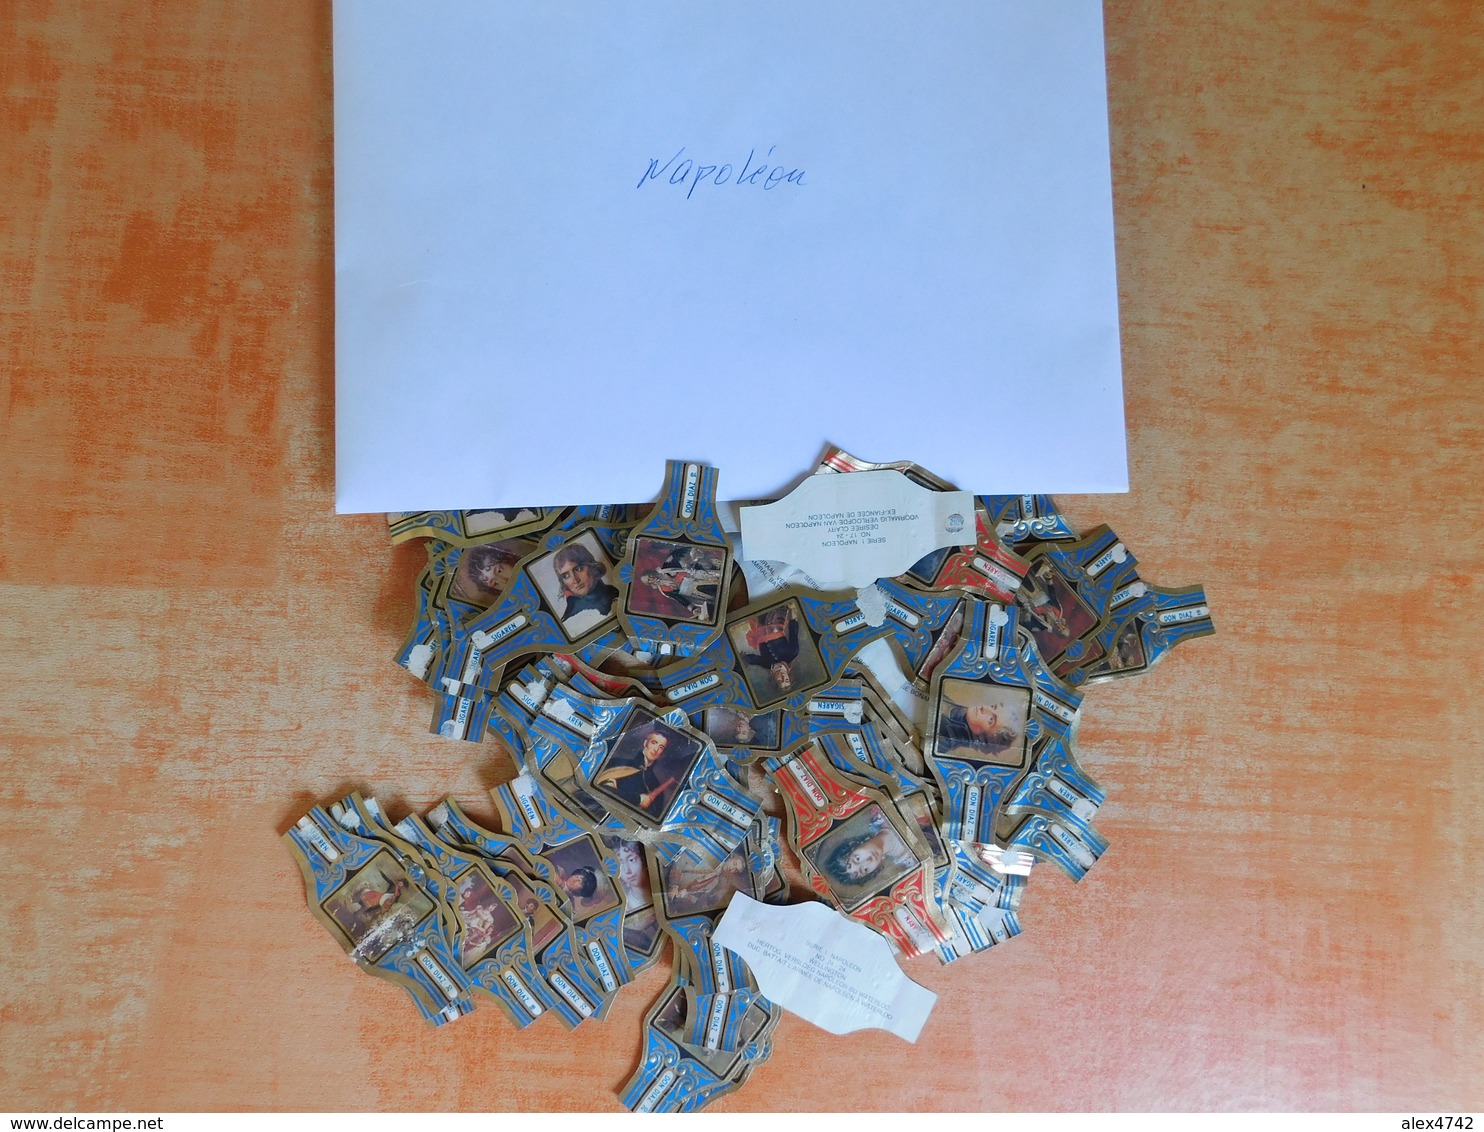 Lot de centaines de bagues de cigare Don Diaz (5 x 2 cm) triées par thèmes